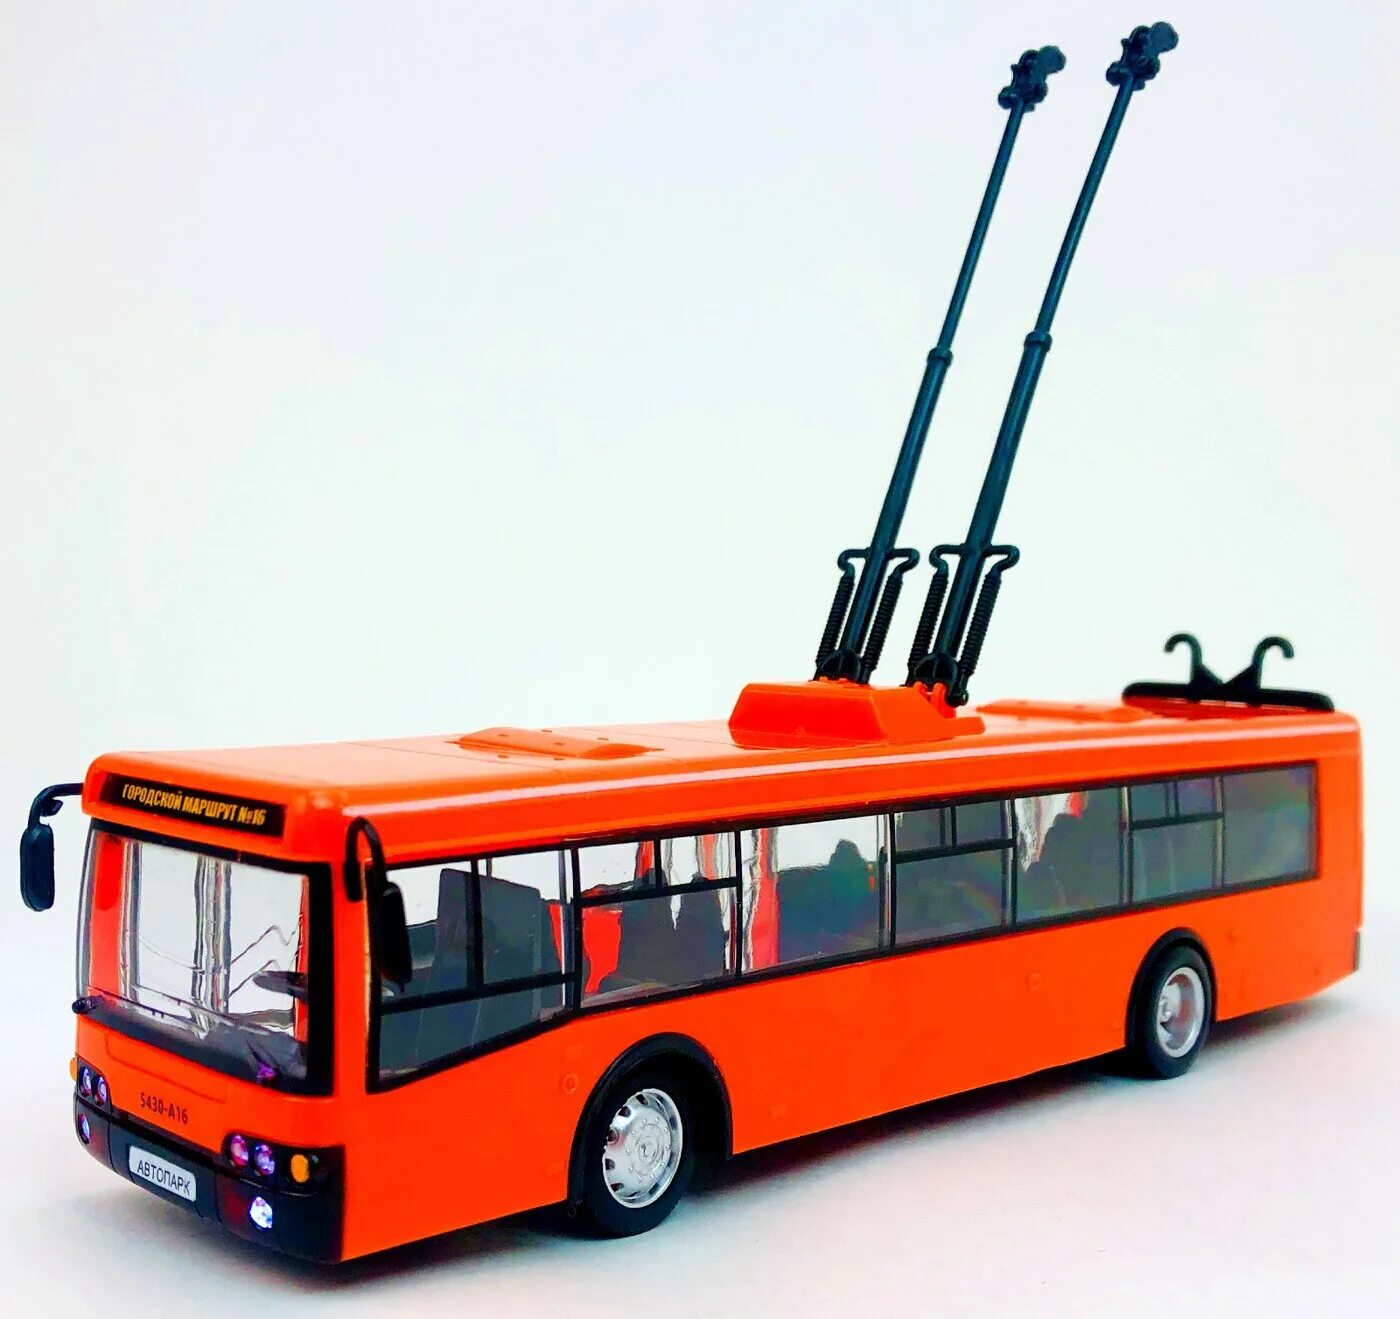 1 43 28. Троллейбус Play Smart автопарк 9690-b 1 43 28.2 см оранжевый. 9690-B игрушка автопарк - троллейбус. Play Smart автопарк троллейбус. Троллейбус 1:43 Play Smart.